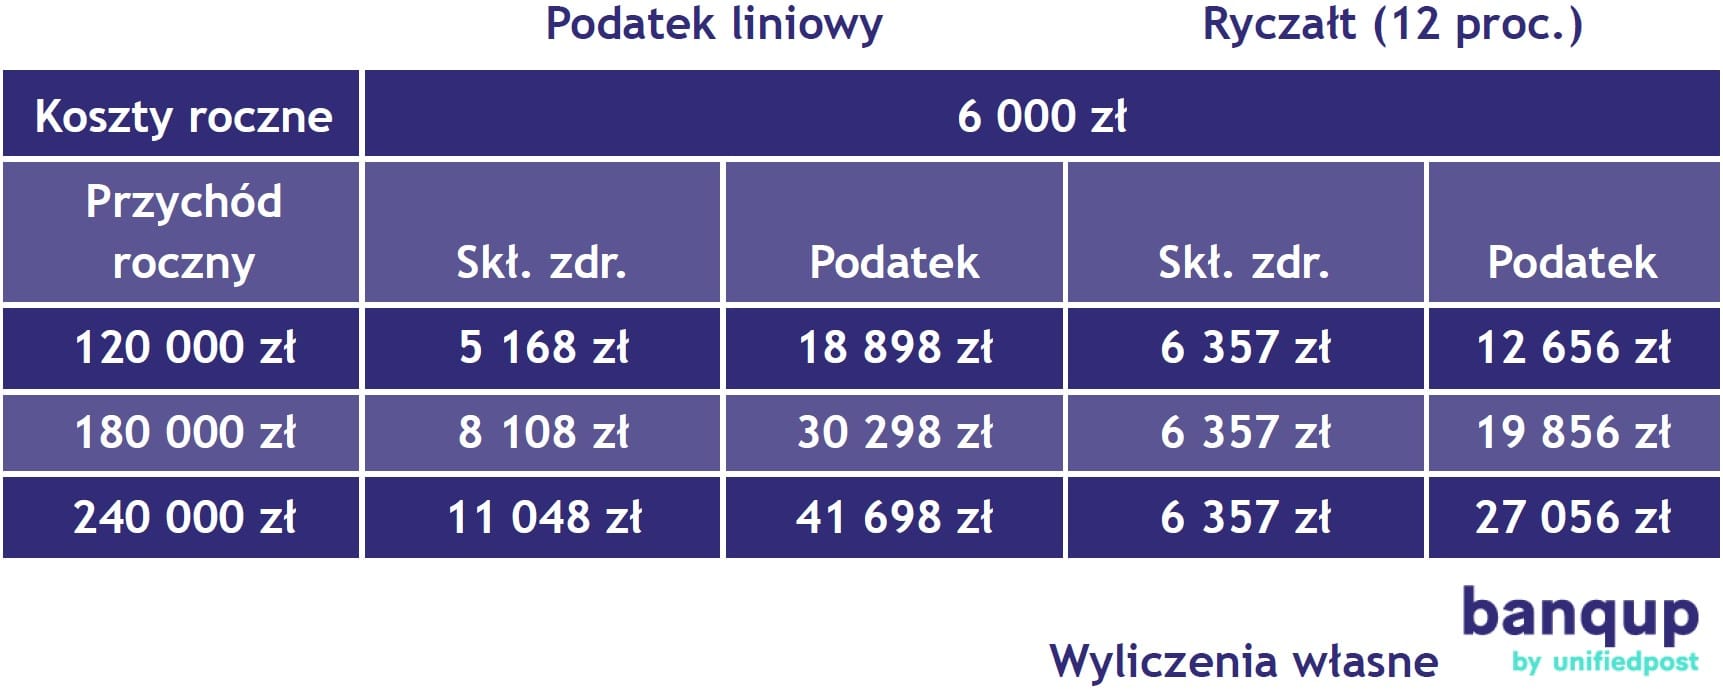 Polski Ład – w IT samozatrudnieni mogą oszczędzić ponad 10 tys. zł rocznie przechodząc na ryczałt 3